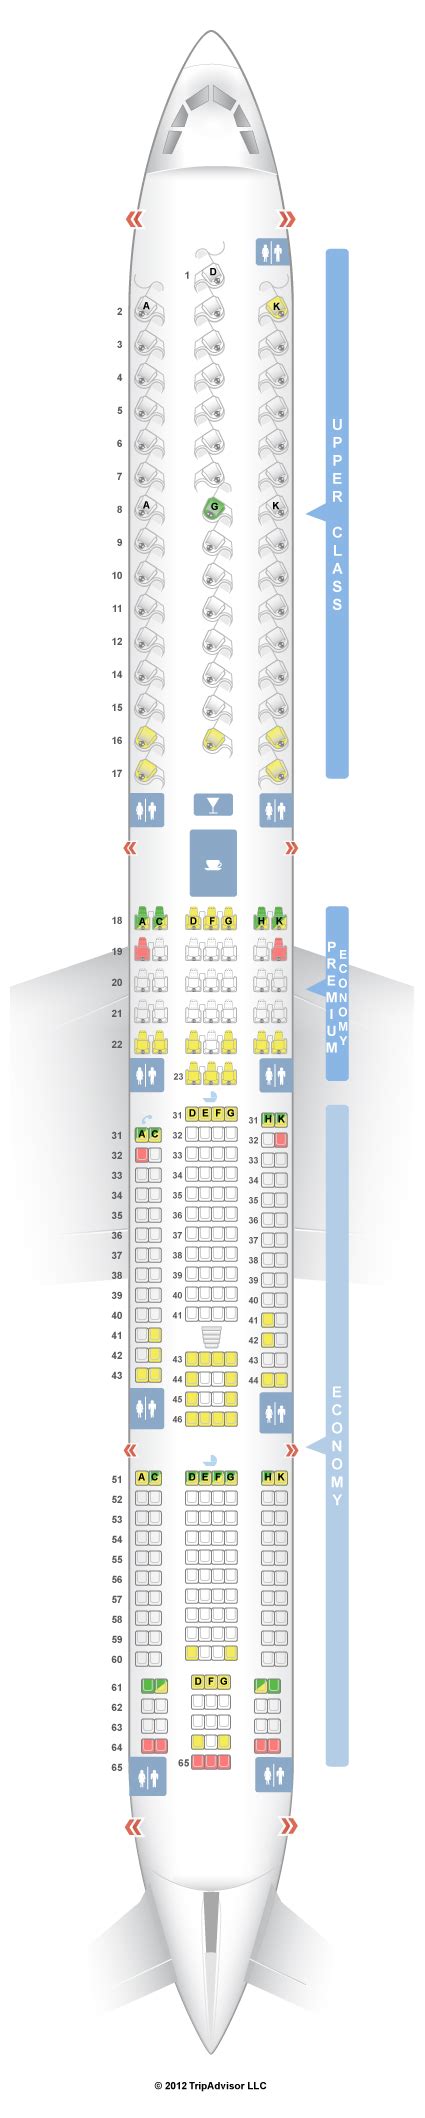 Seatguru Seat Map Virgin Atlantic Airbus A340 600 346 Virgin